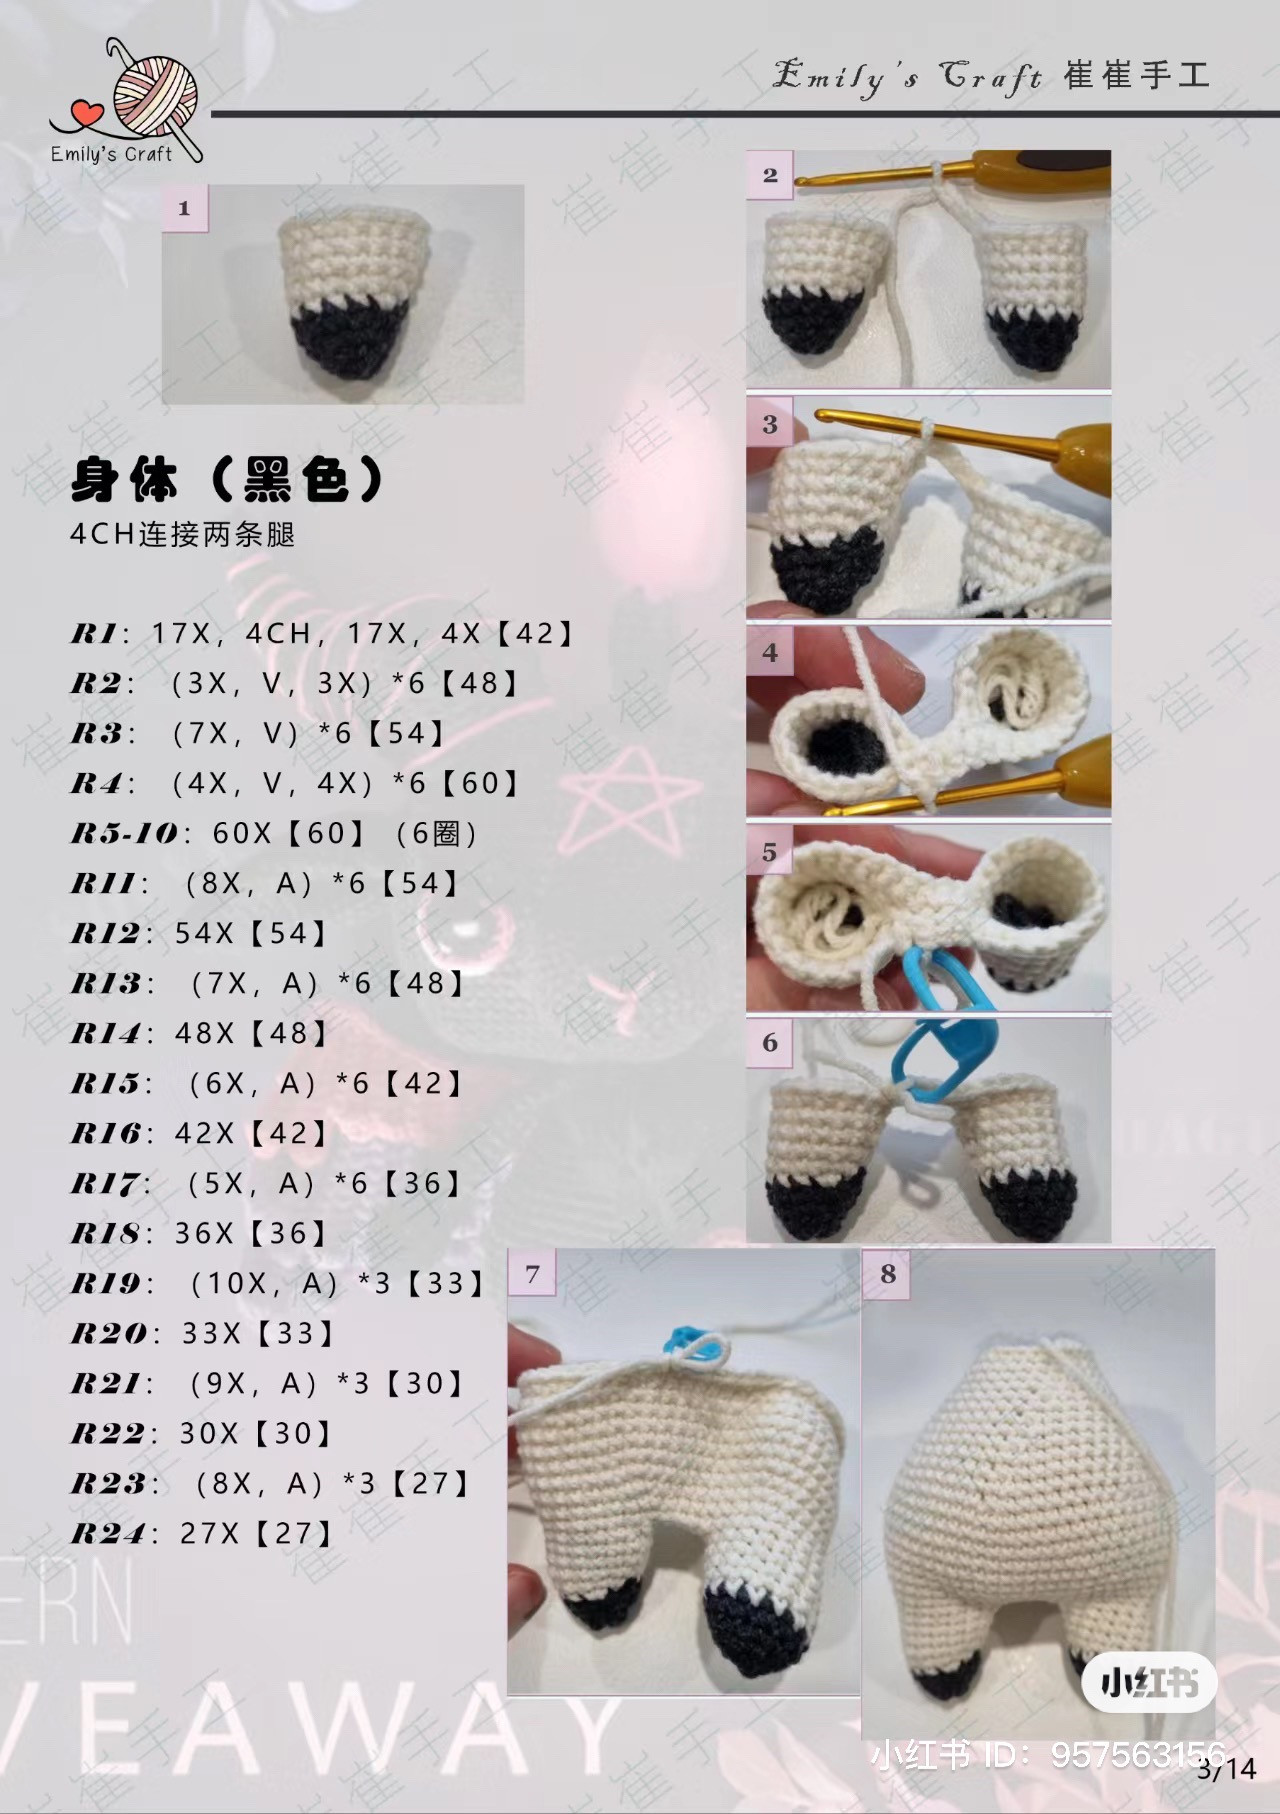 Baphomet goat-headed demon crochet pattern